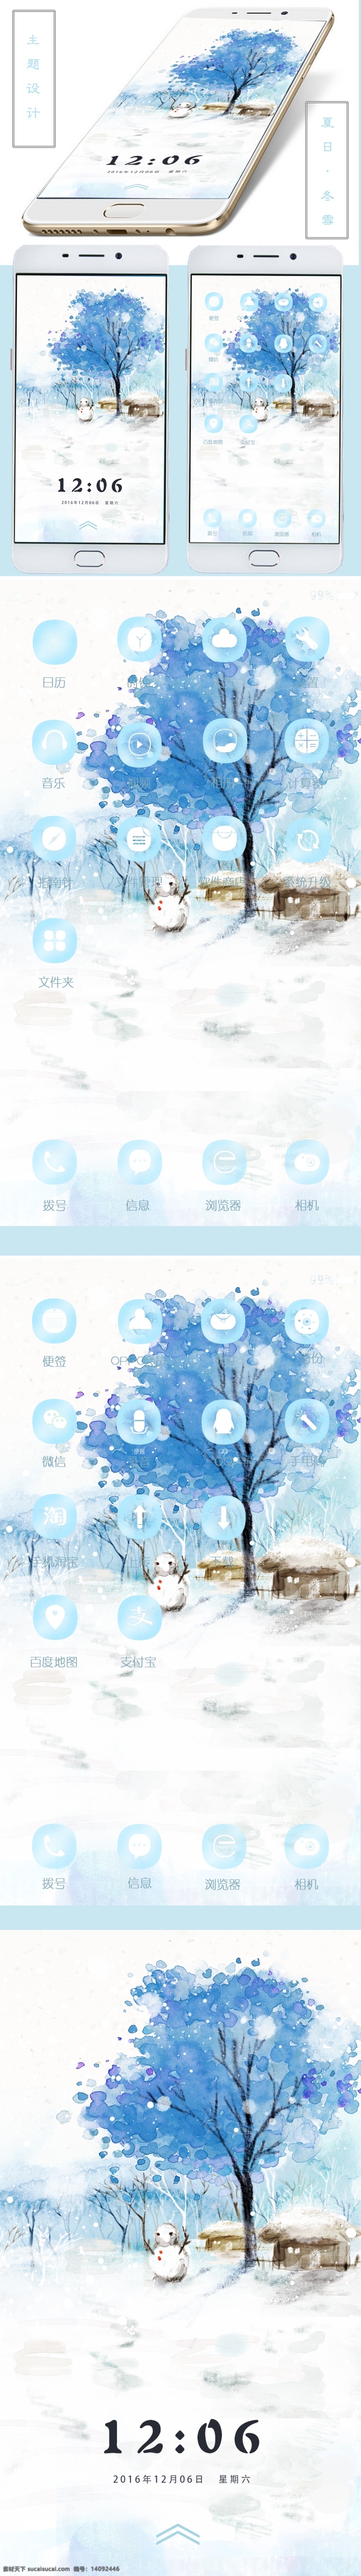 雪人 手机 主题 ui 标志 手绘